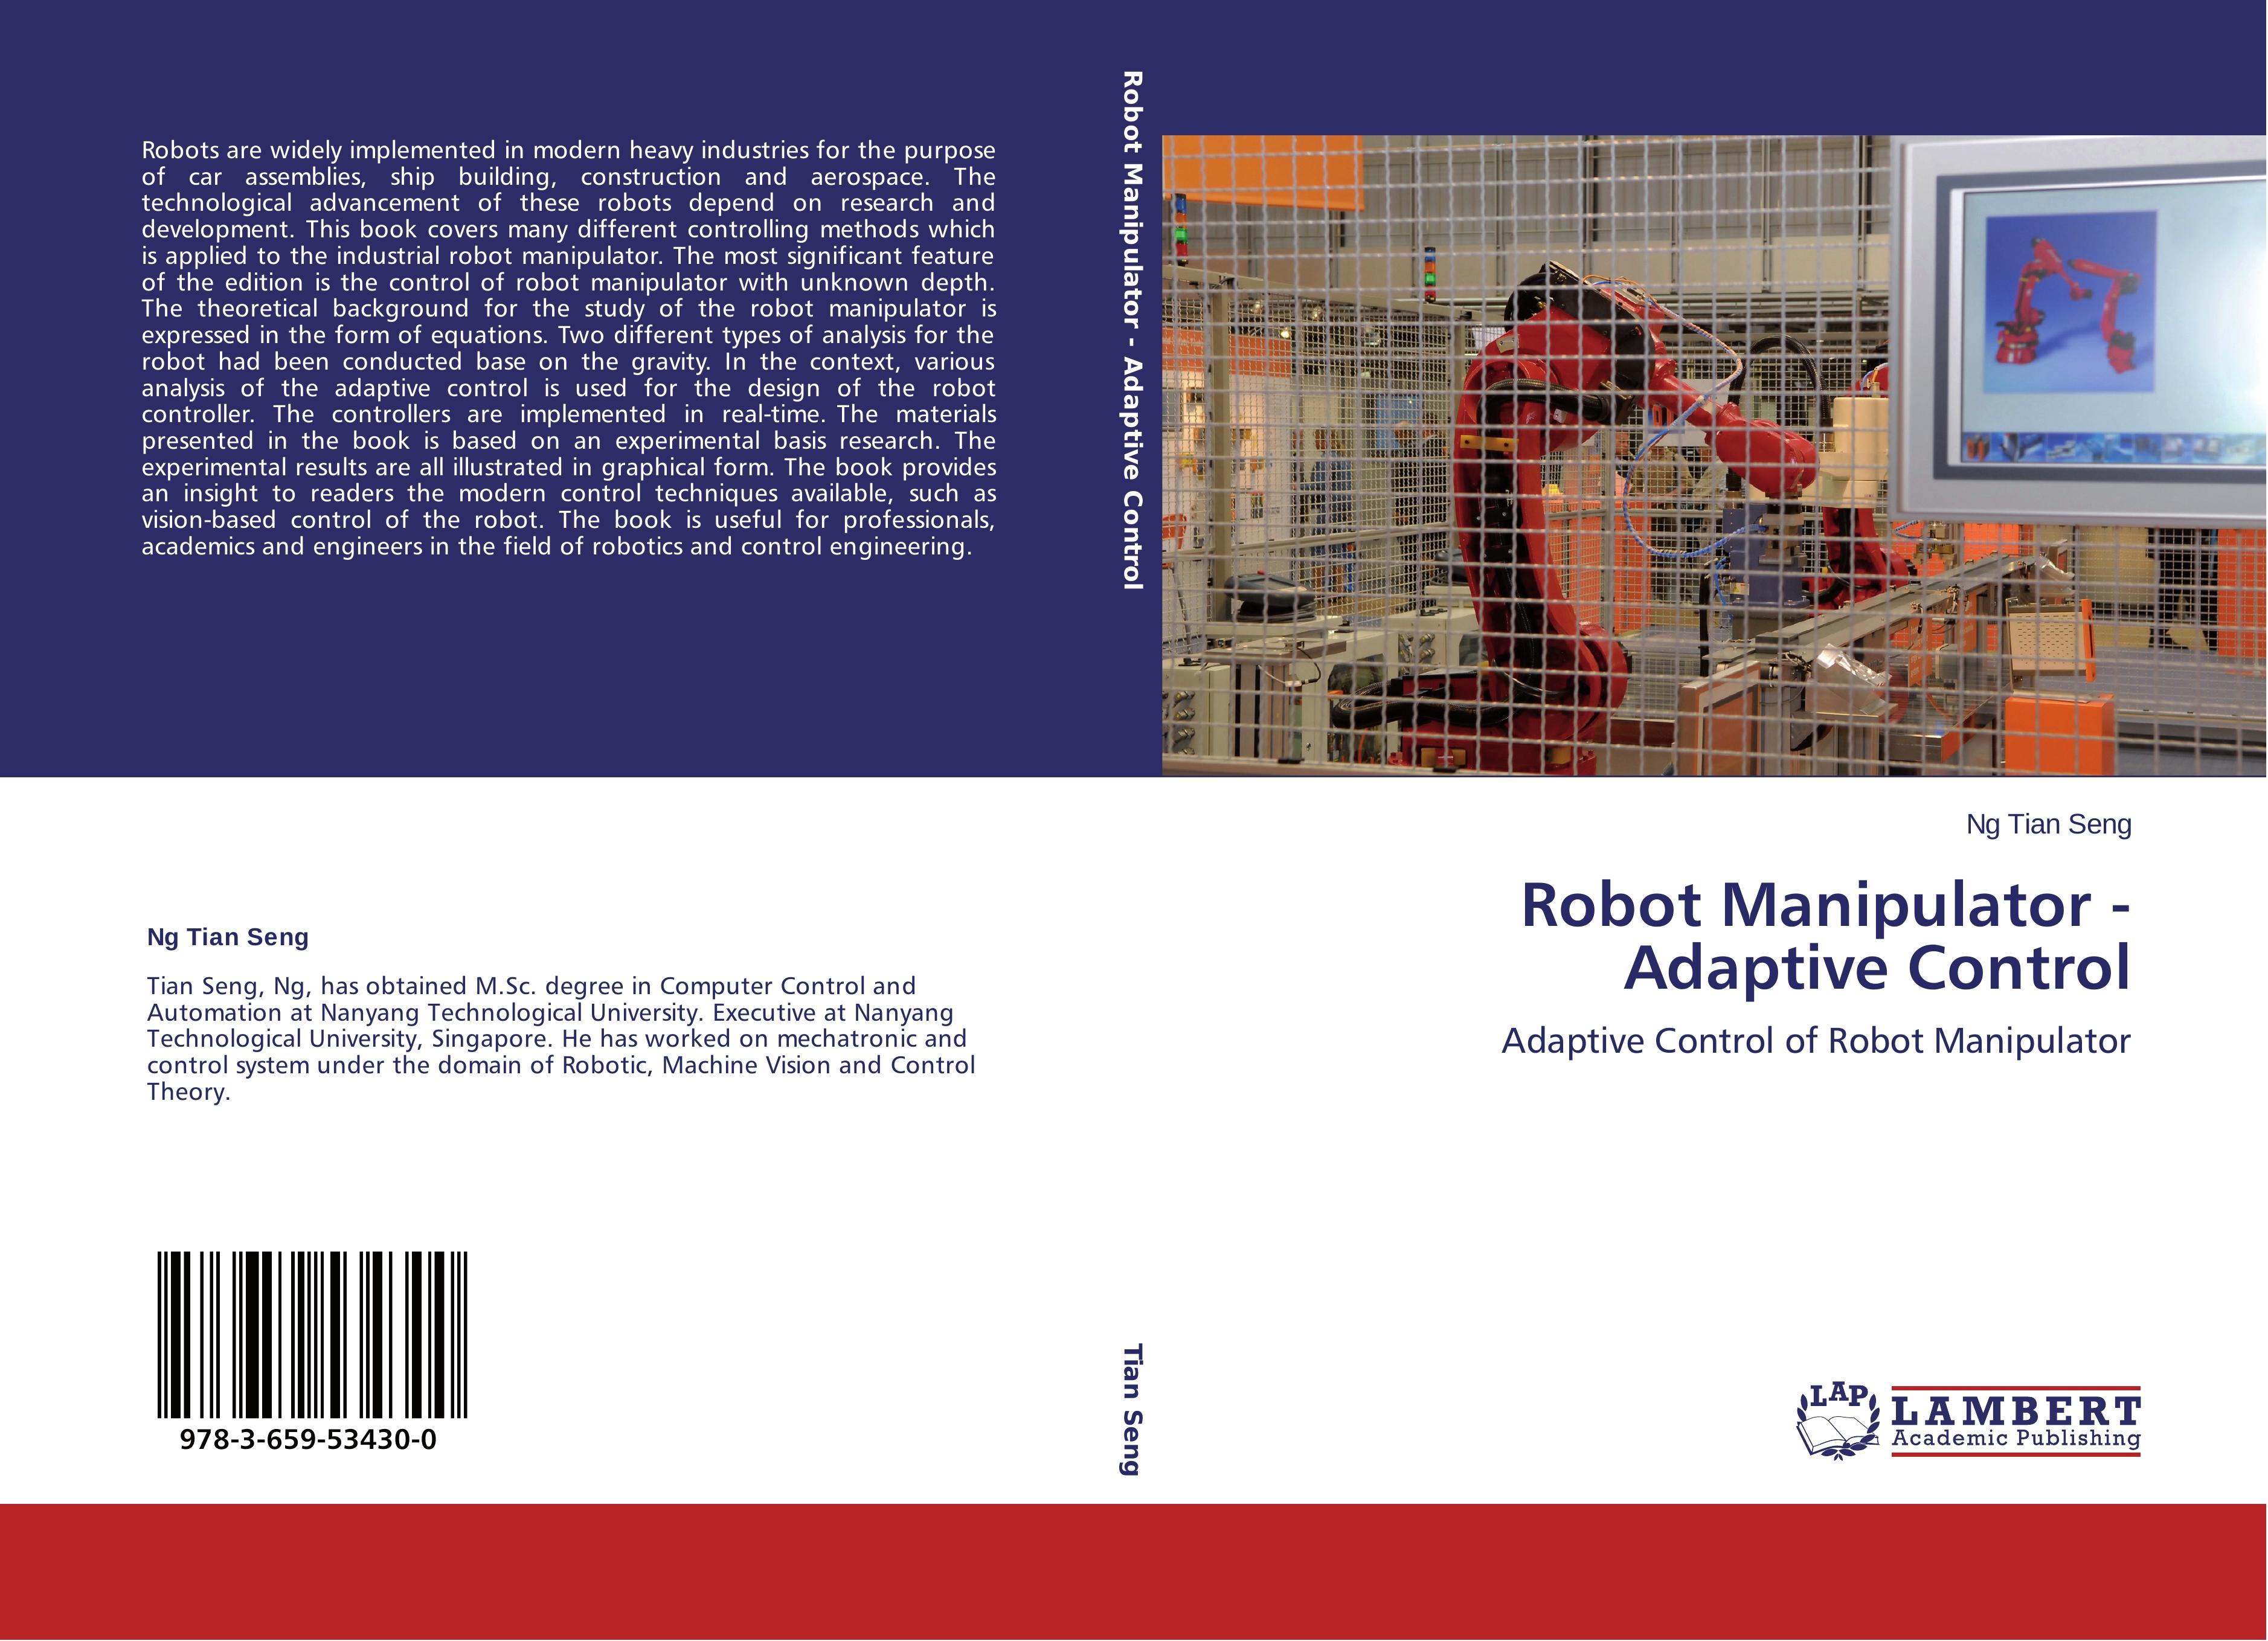 Robot Manipulator - Adaptive Control - Ng Tian Seng